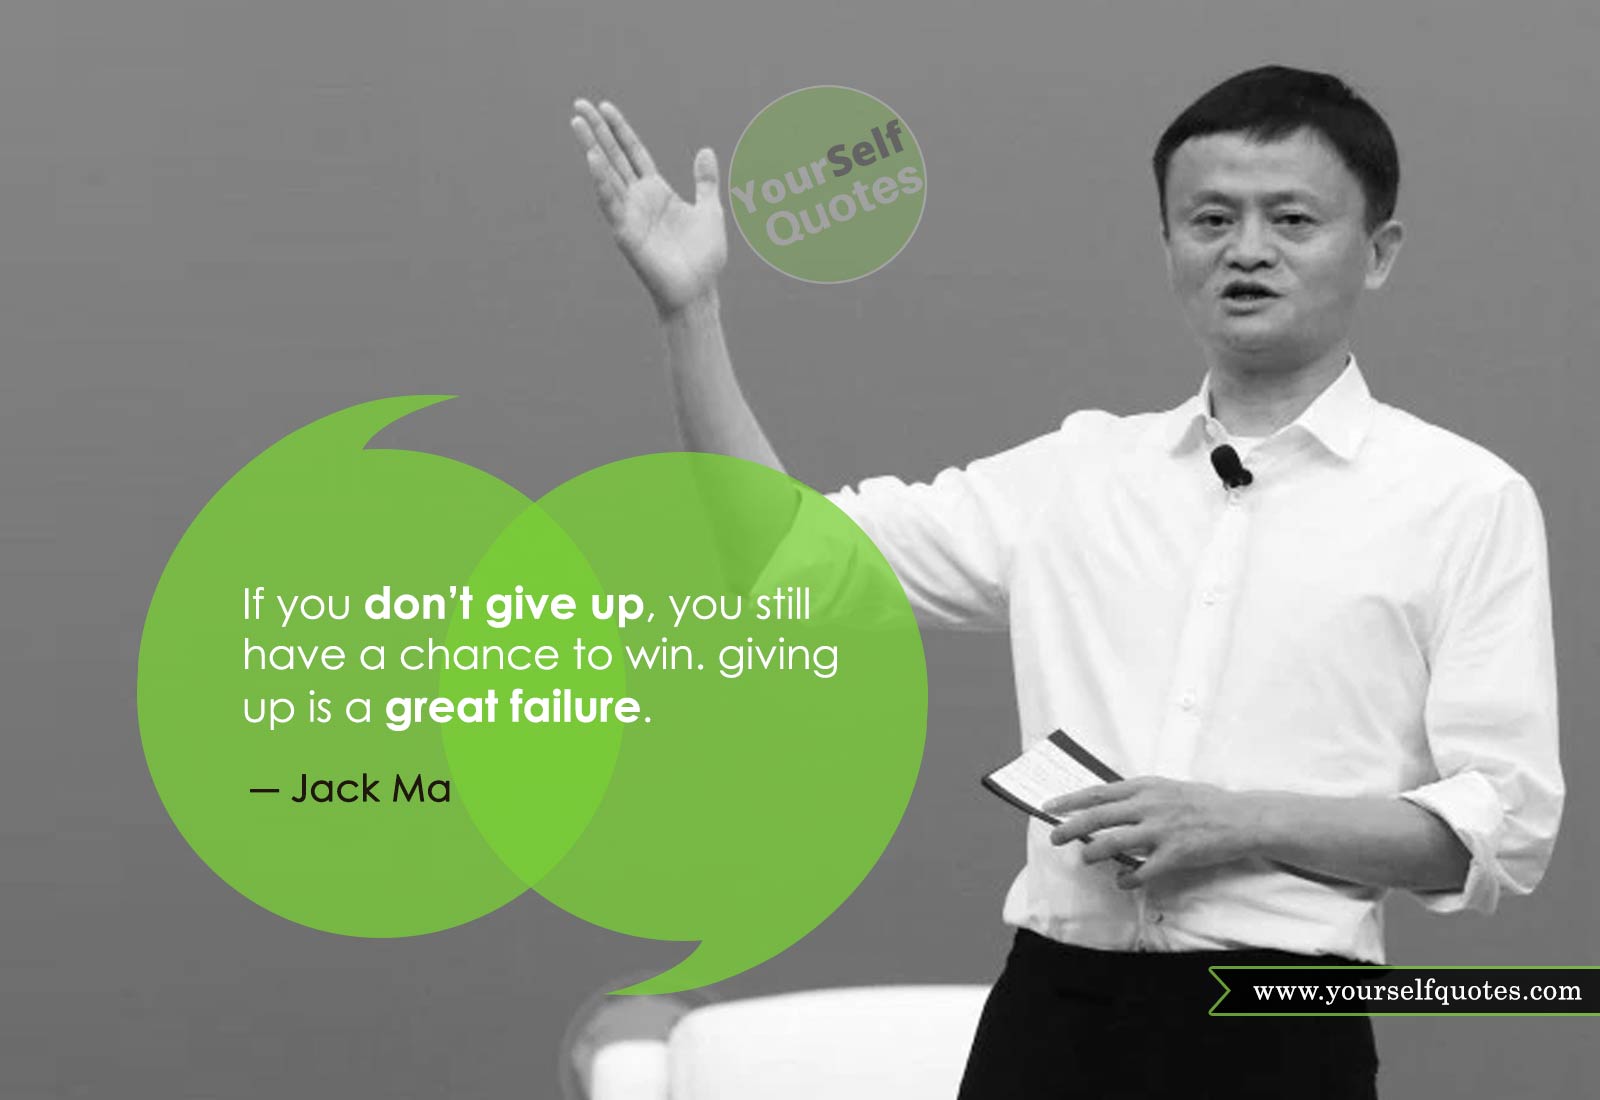 Jack Ma Quotes on Failure